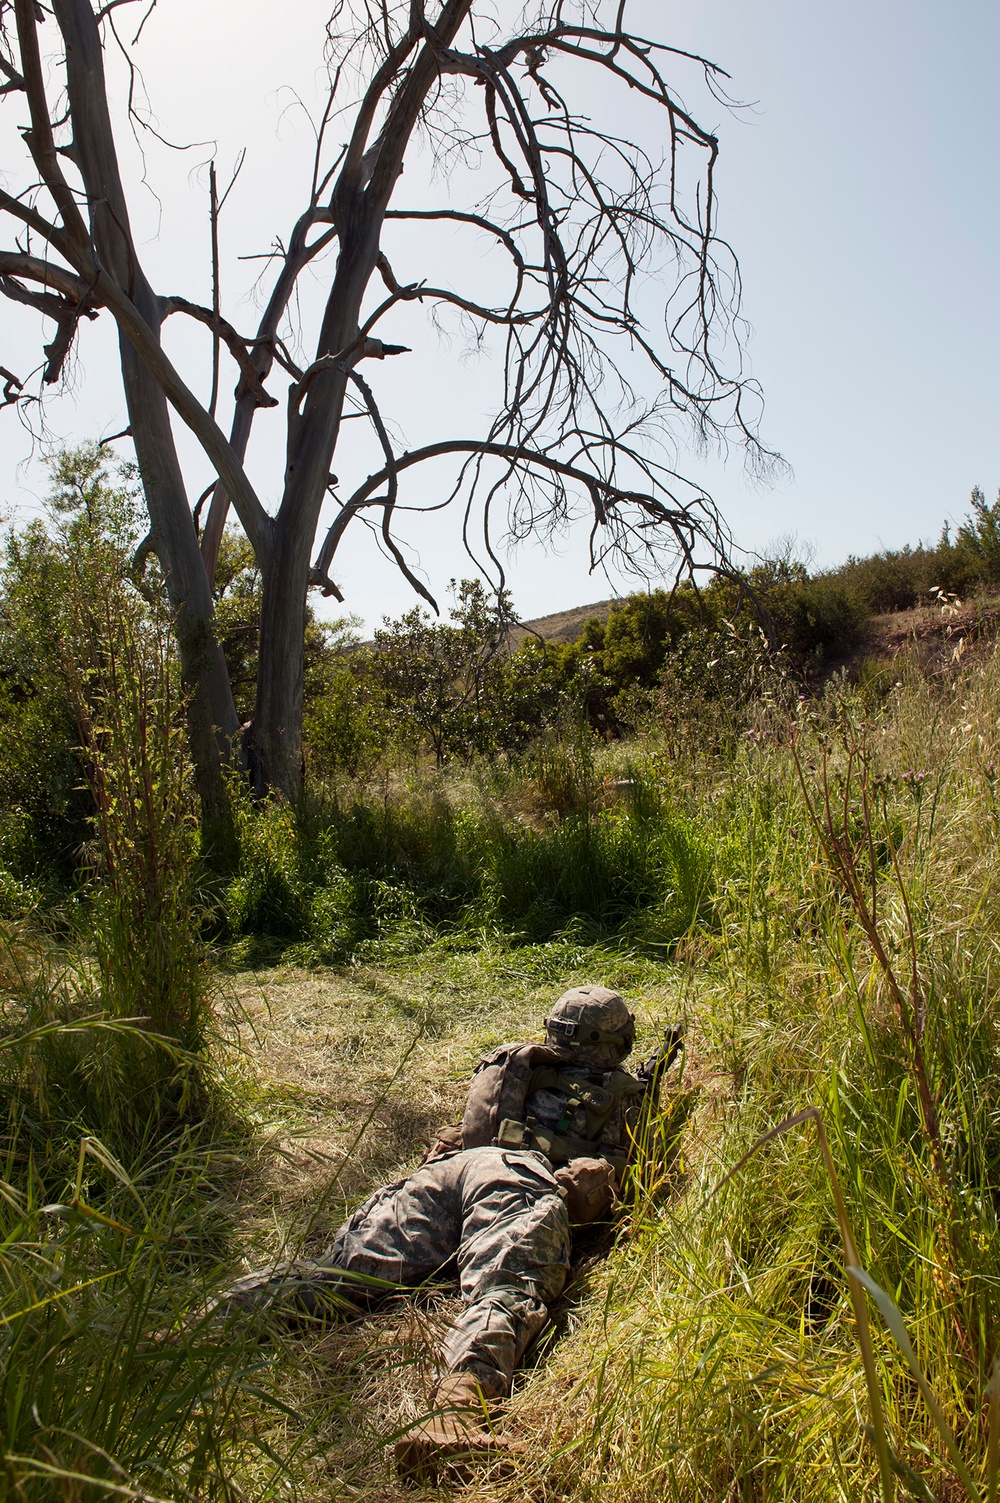 U.S military Combat Cameramen train in field exercise